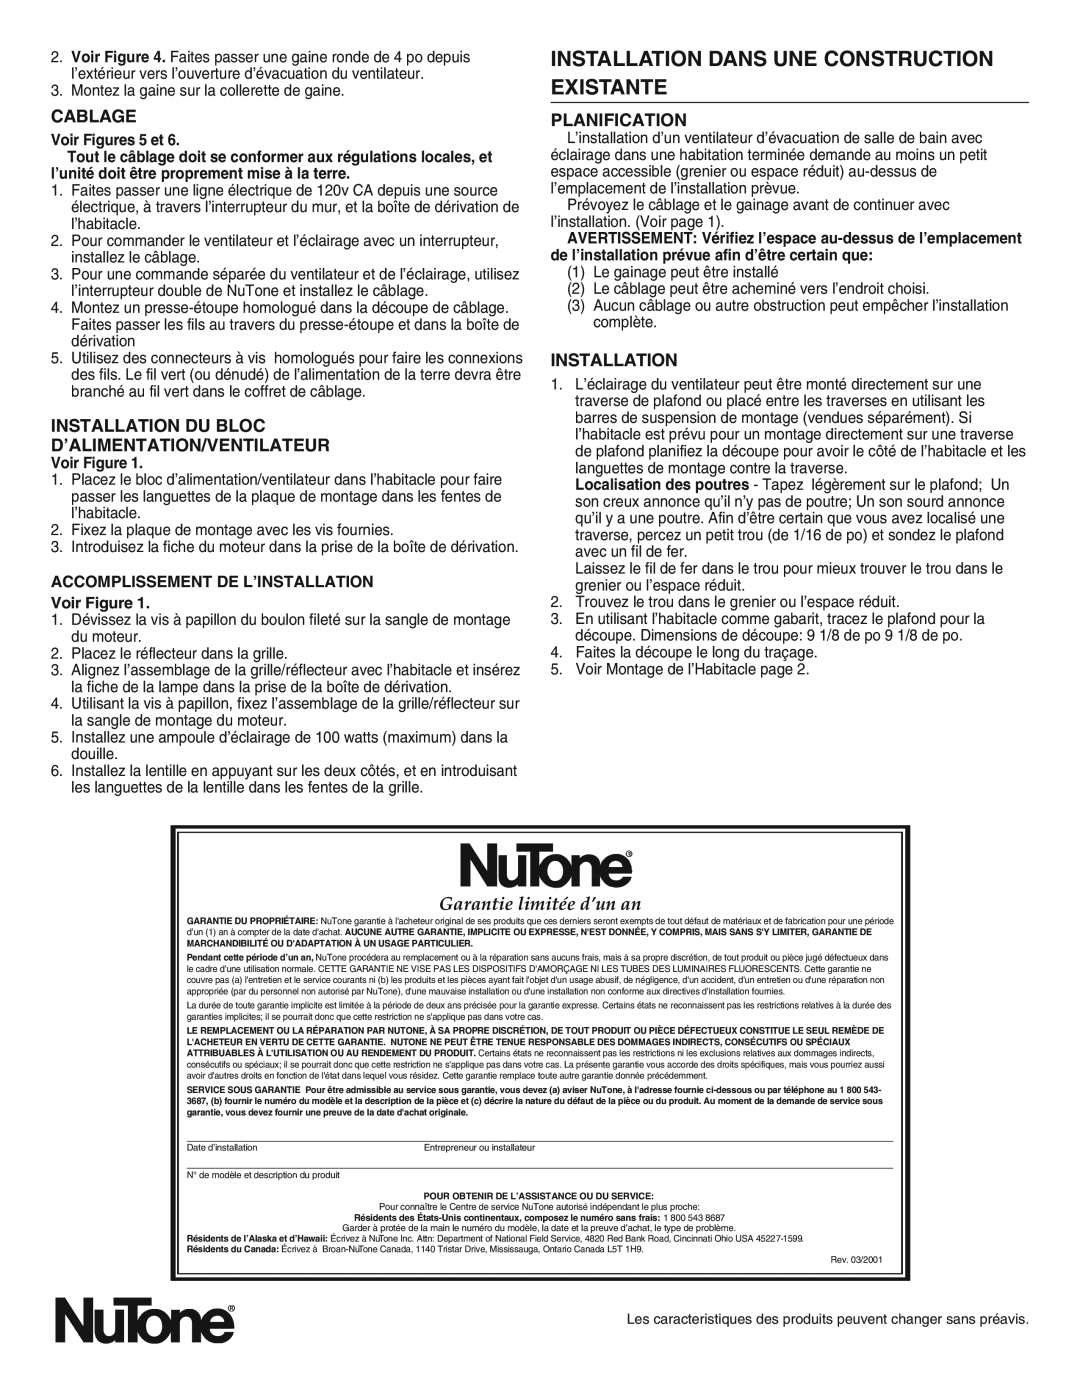 NuTone 763RLN, 769RL important safety instructions Installation Dans Une Construction Existante, Garantie limitée d’un an 